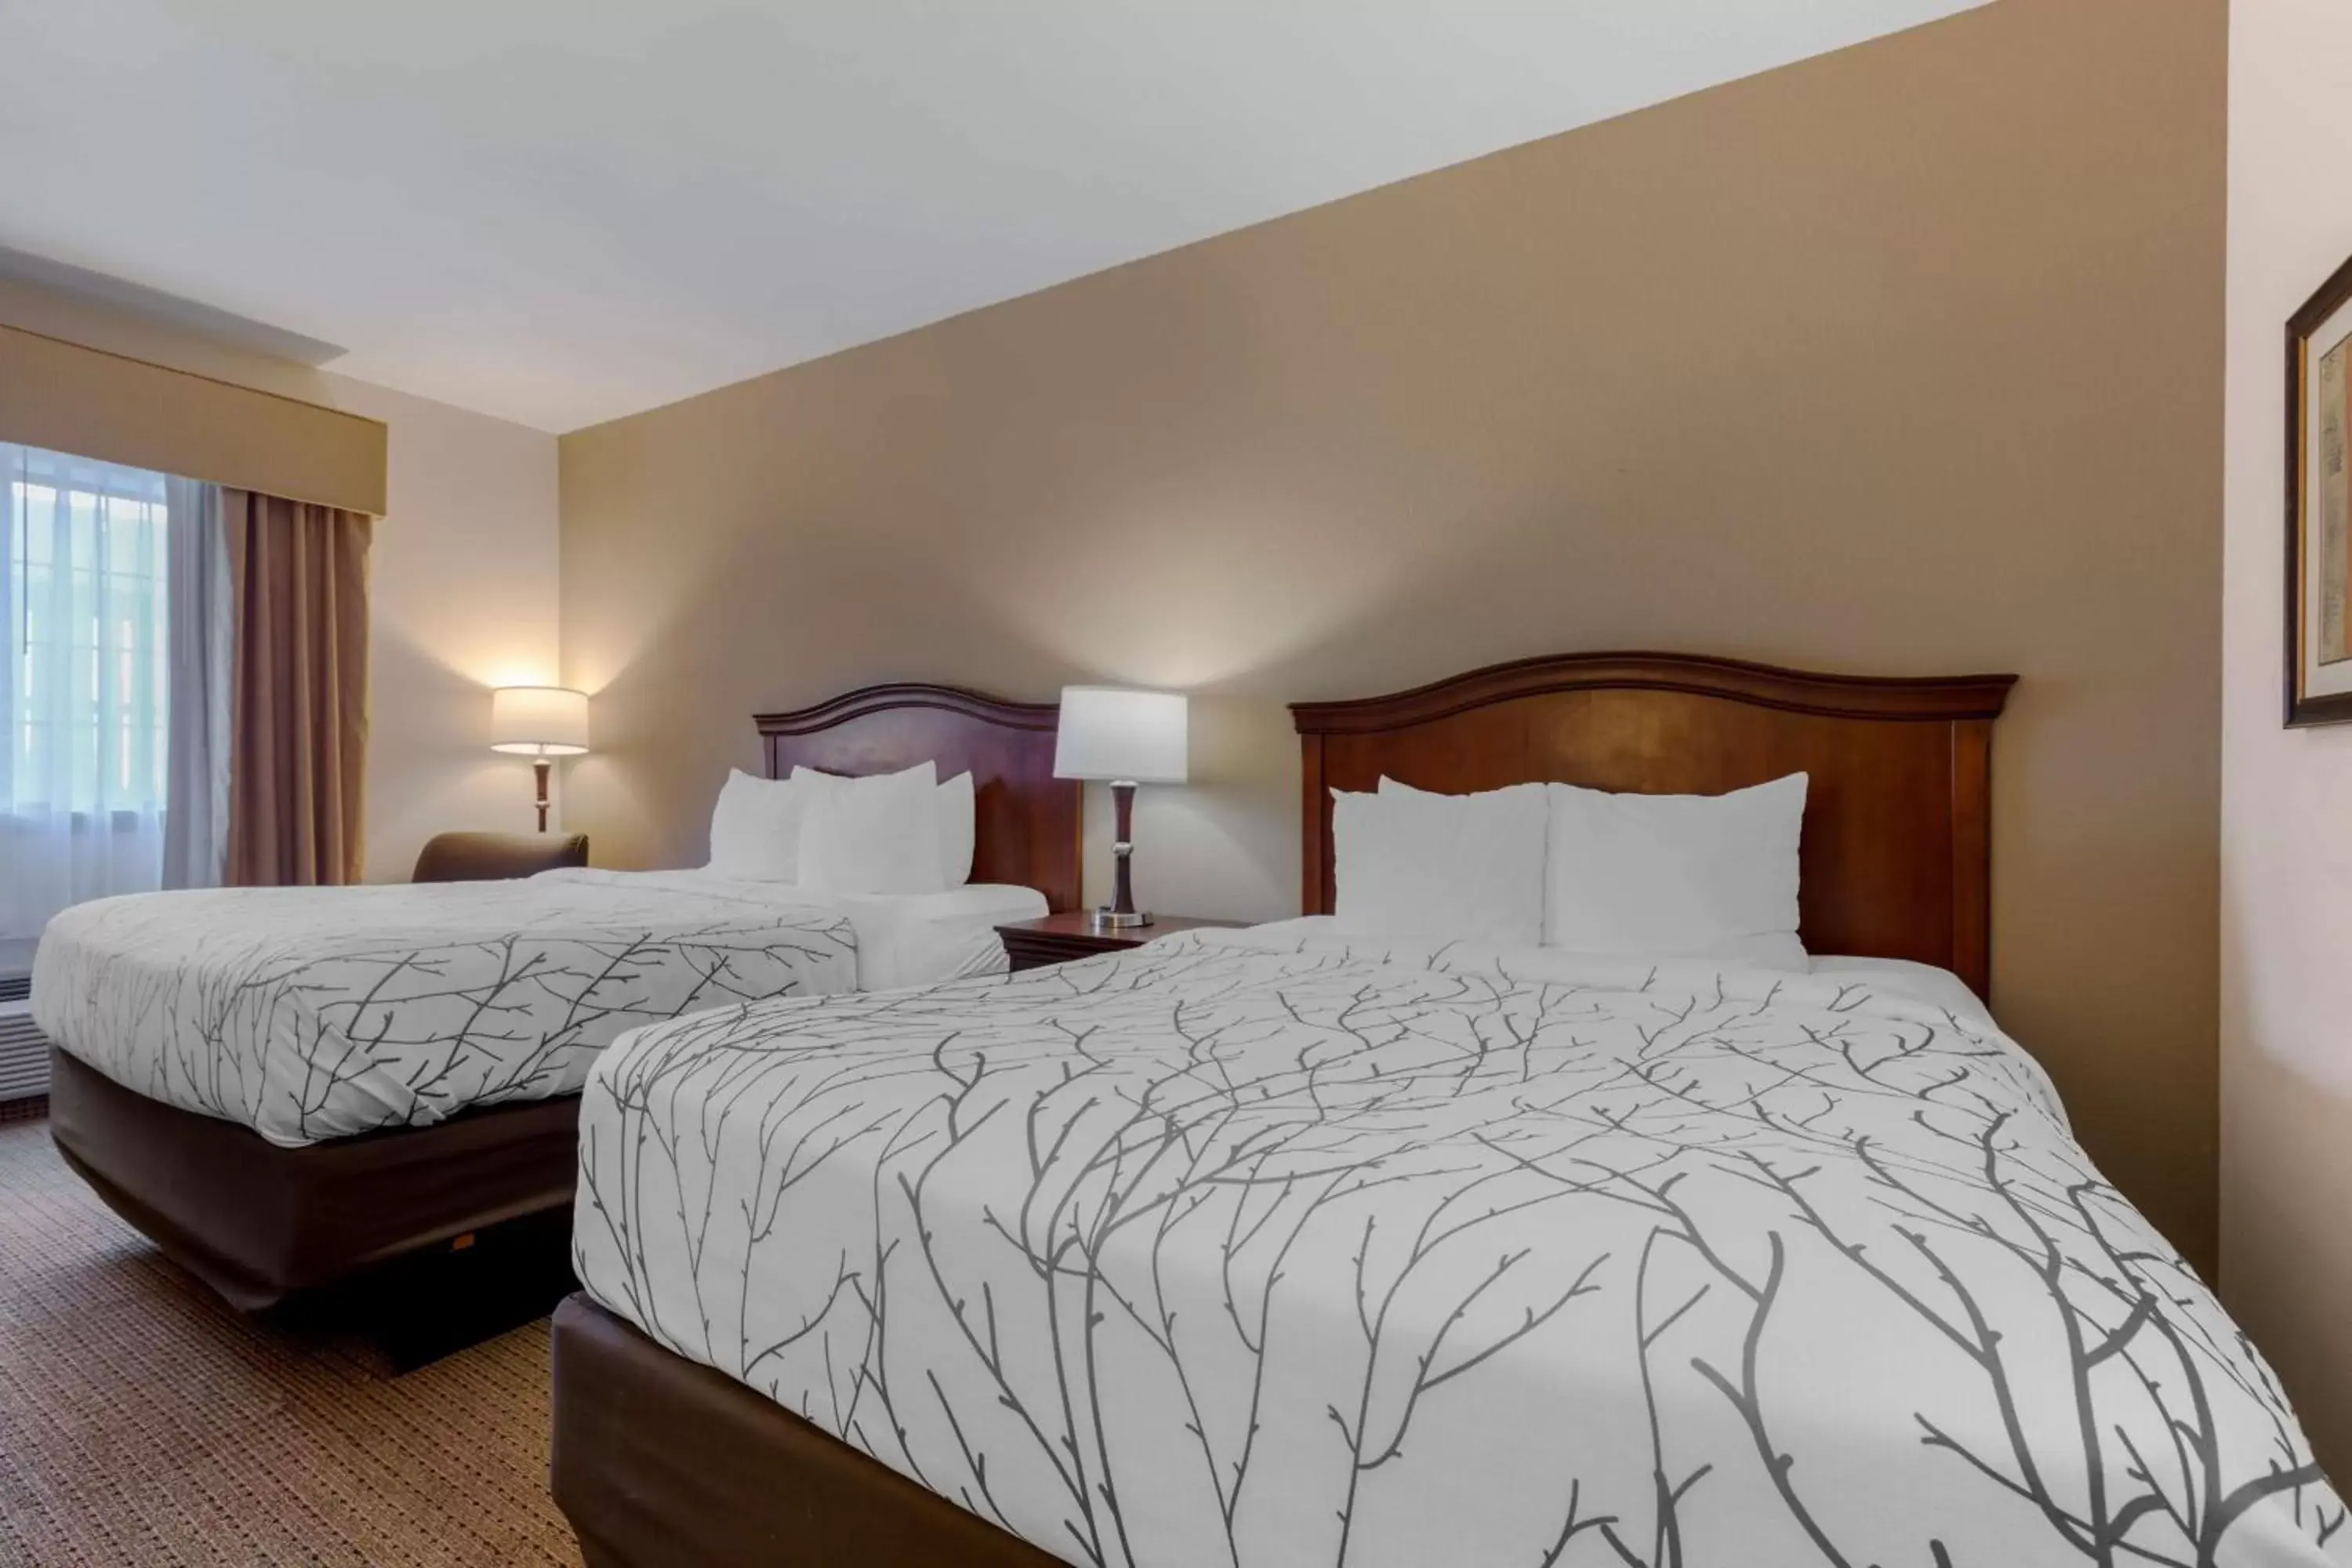 Bedroom, Bed in Best Western Plus Sweetwater Inn & Suites